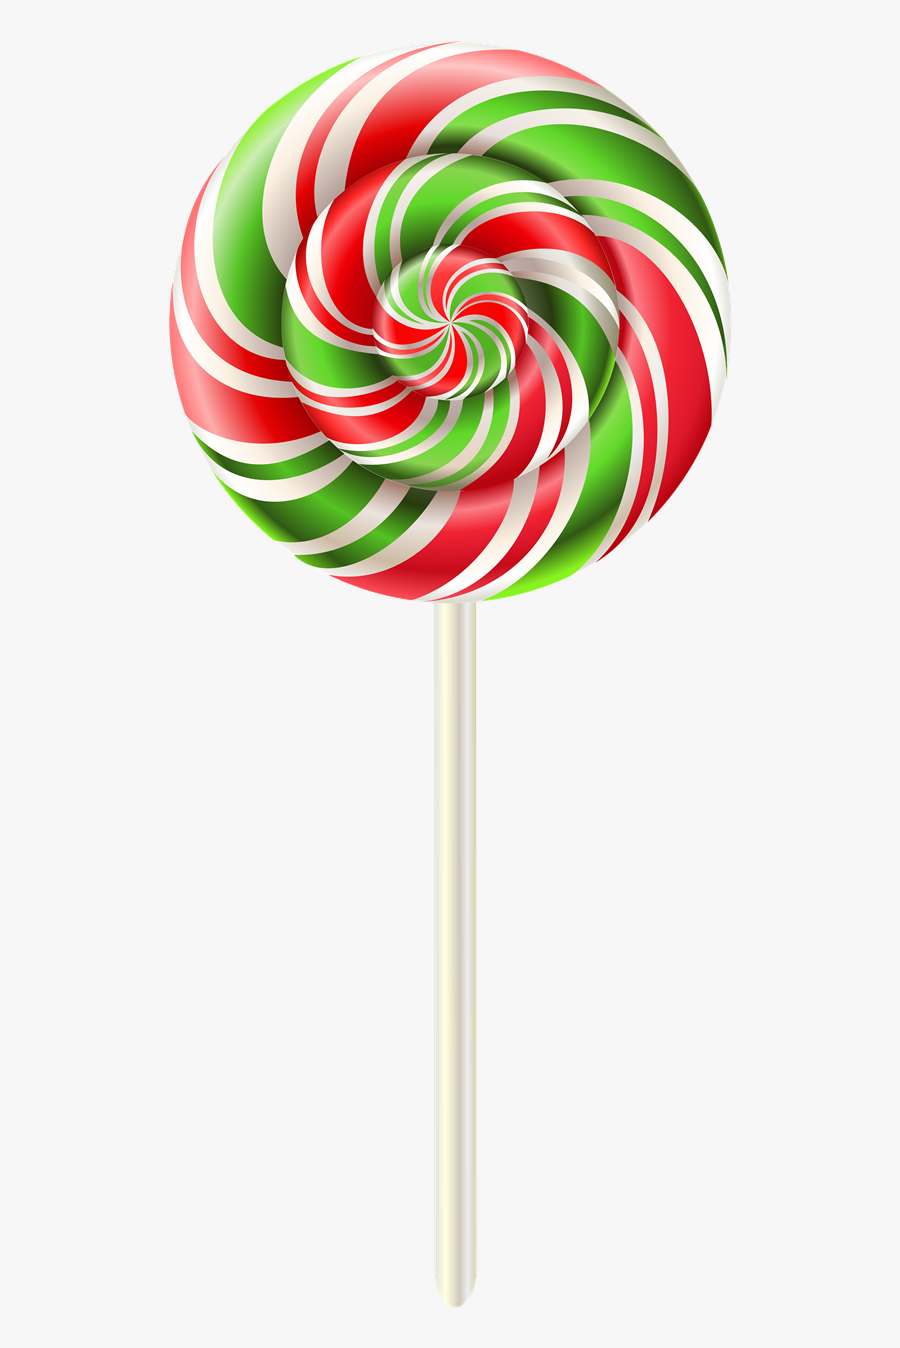 Lollipop,stick Candy,food,clip Art - Lollipop Png, Transparent Clipart